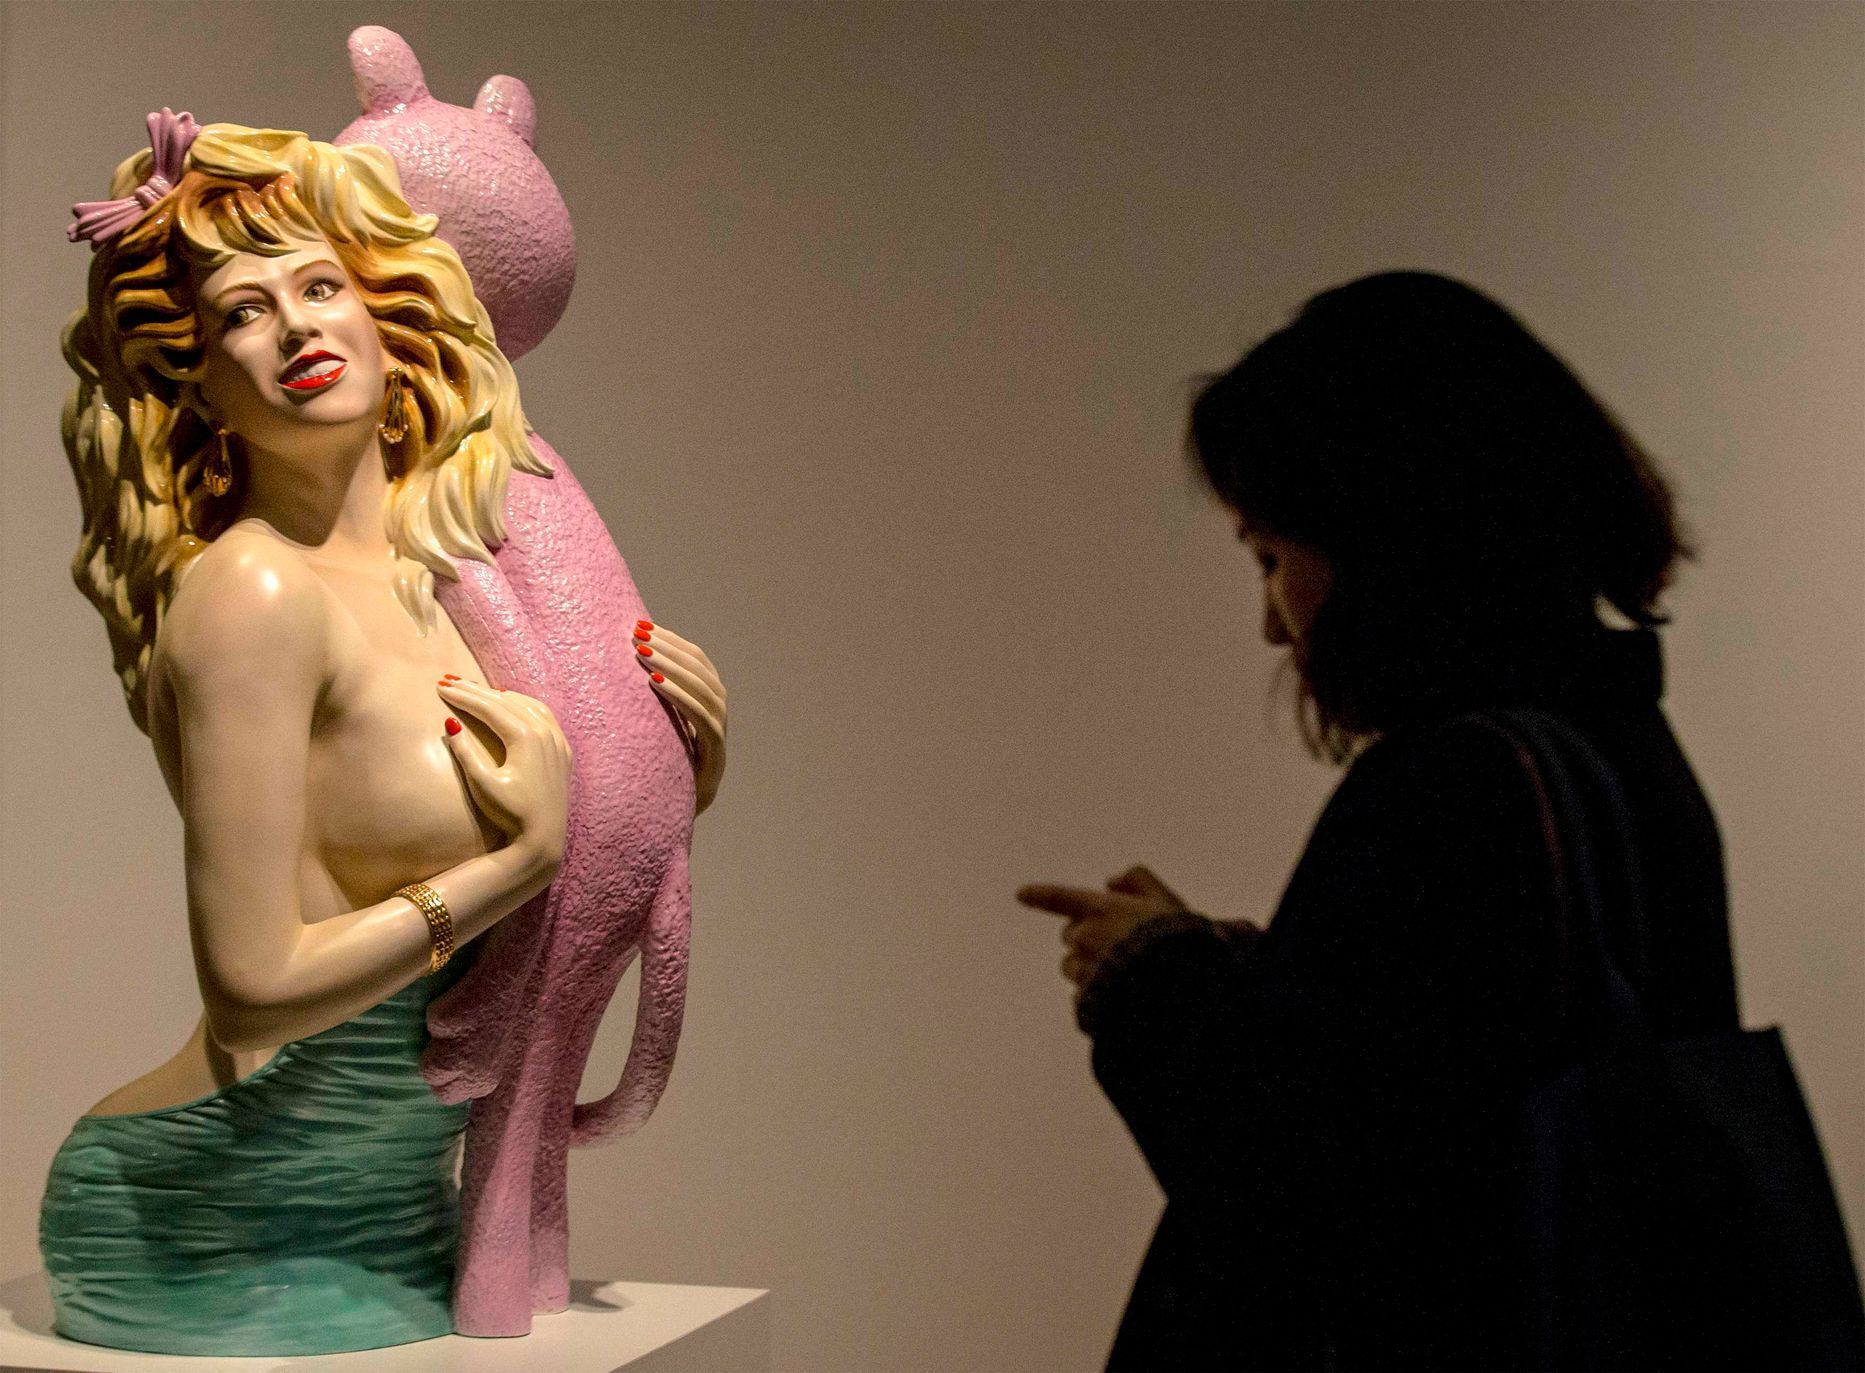 Jeff Koons: Pink Panther.